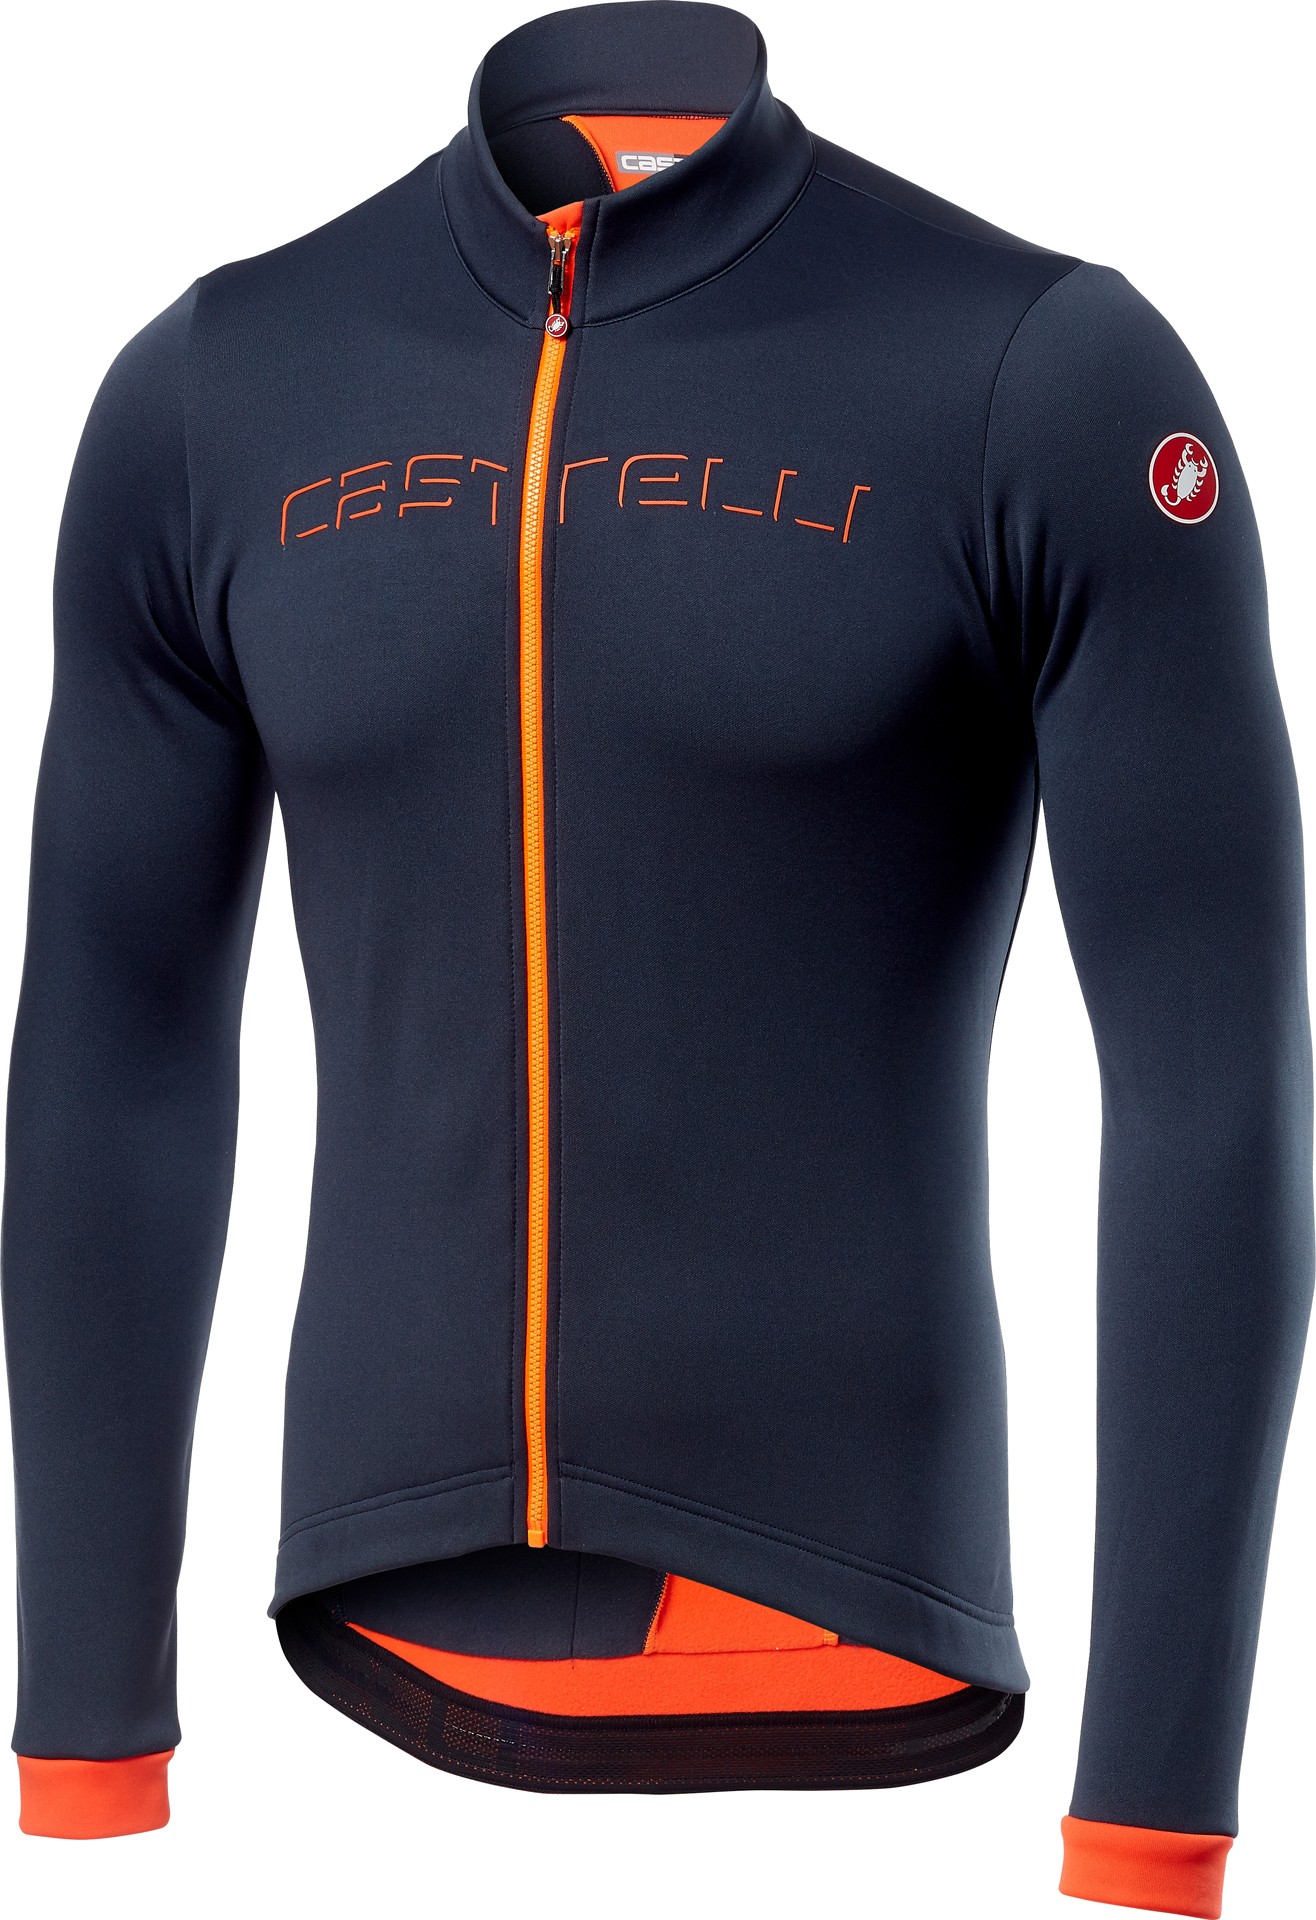 Castelli fondo maillot de cyclisme à manches longues steel bleu foncé orange